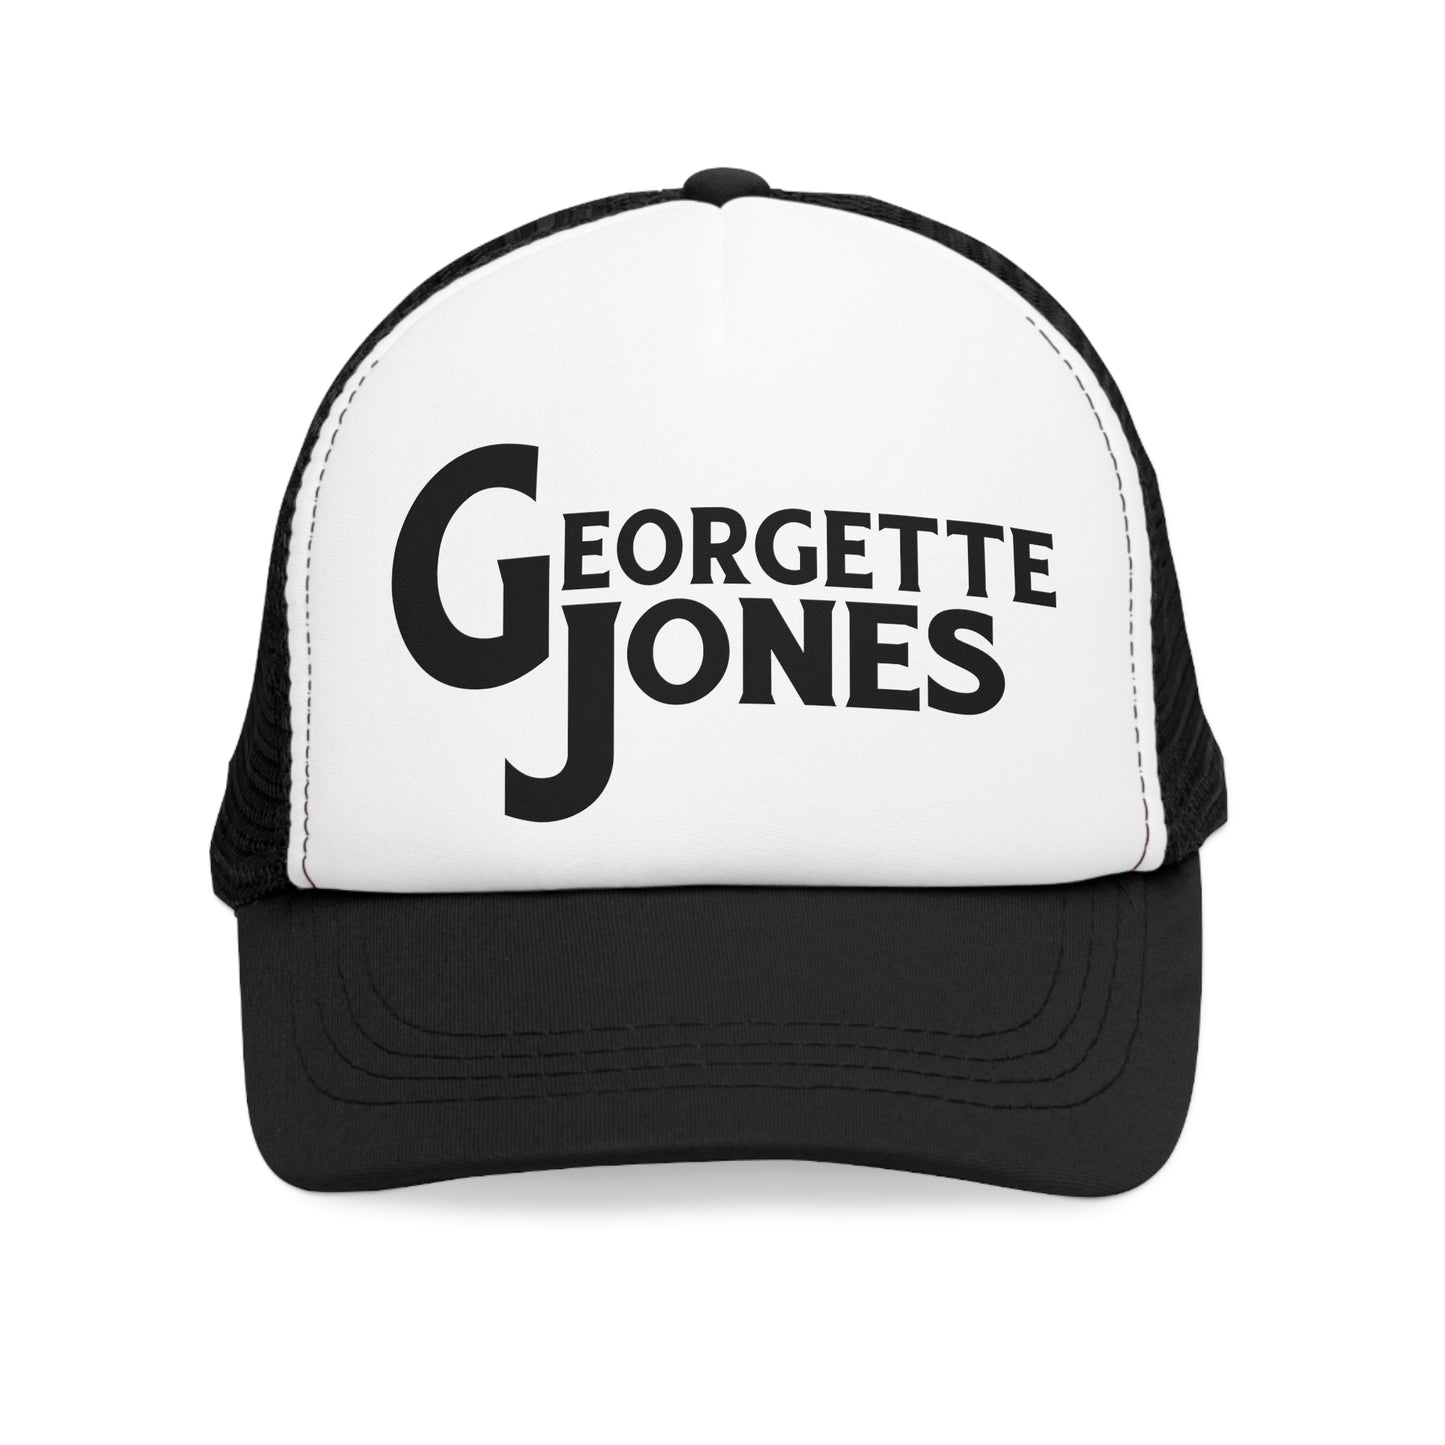 Georgette Jones Mesh Hats